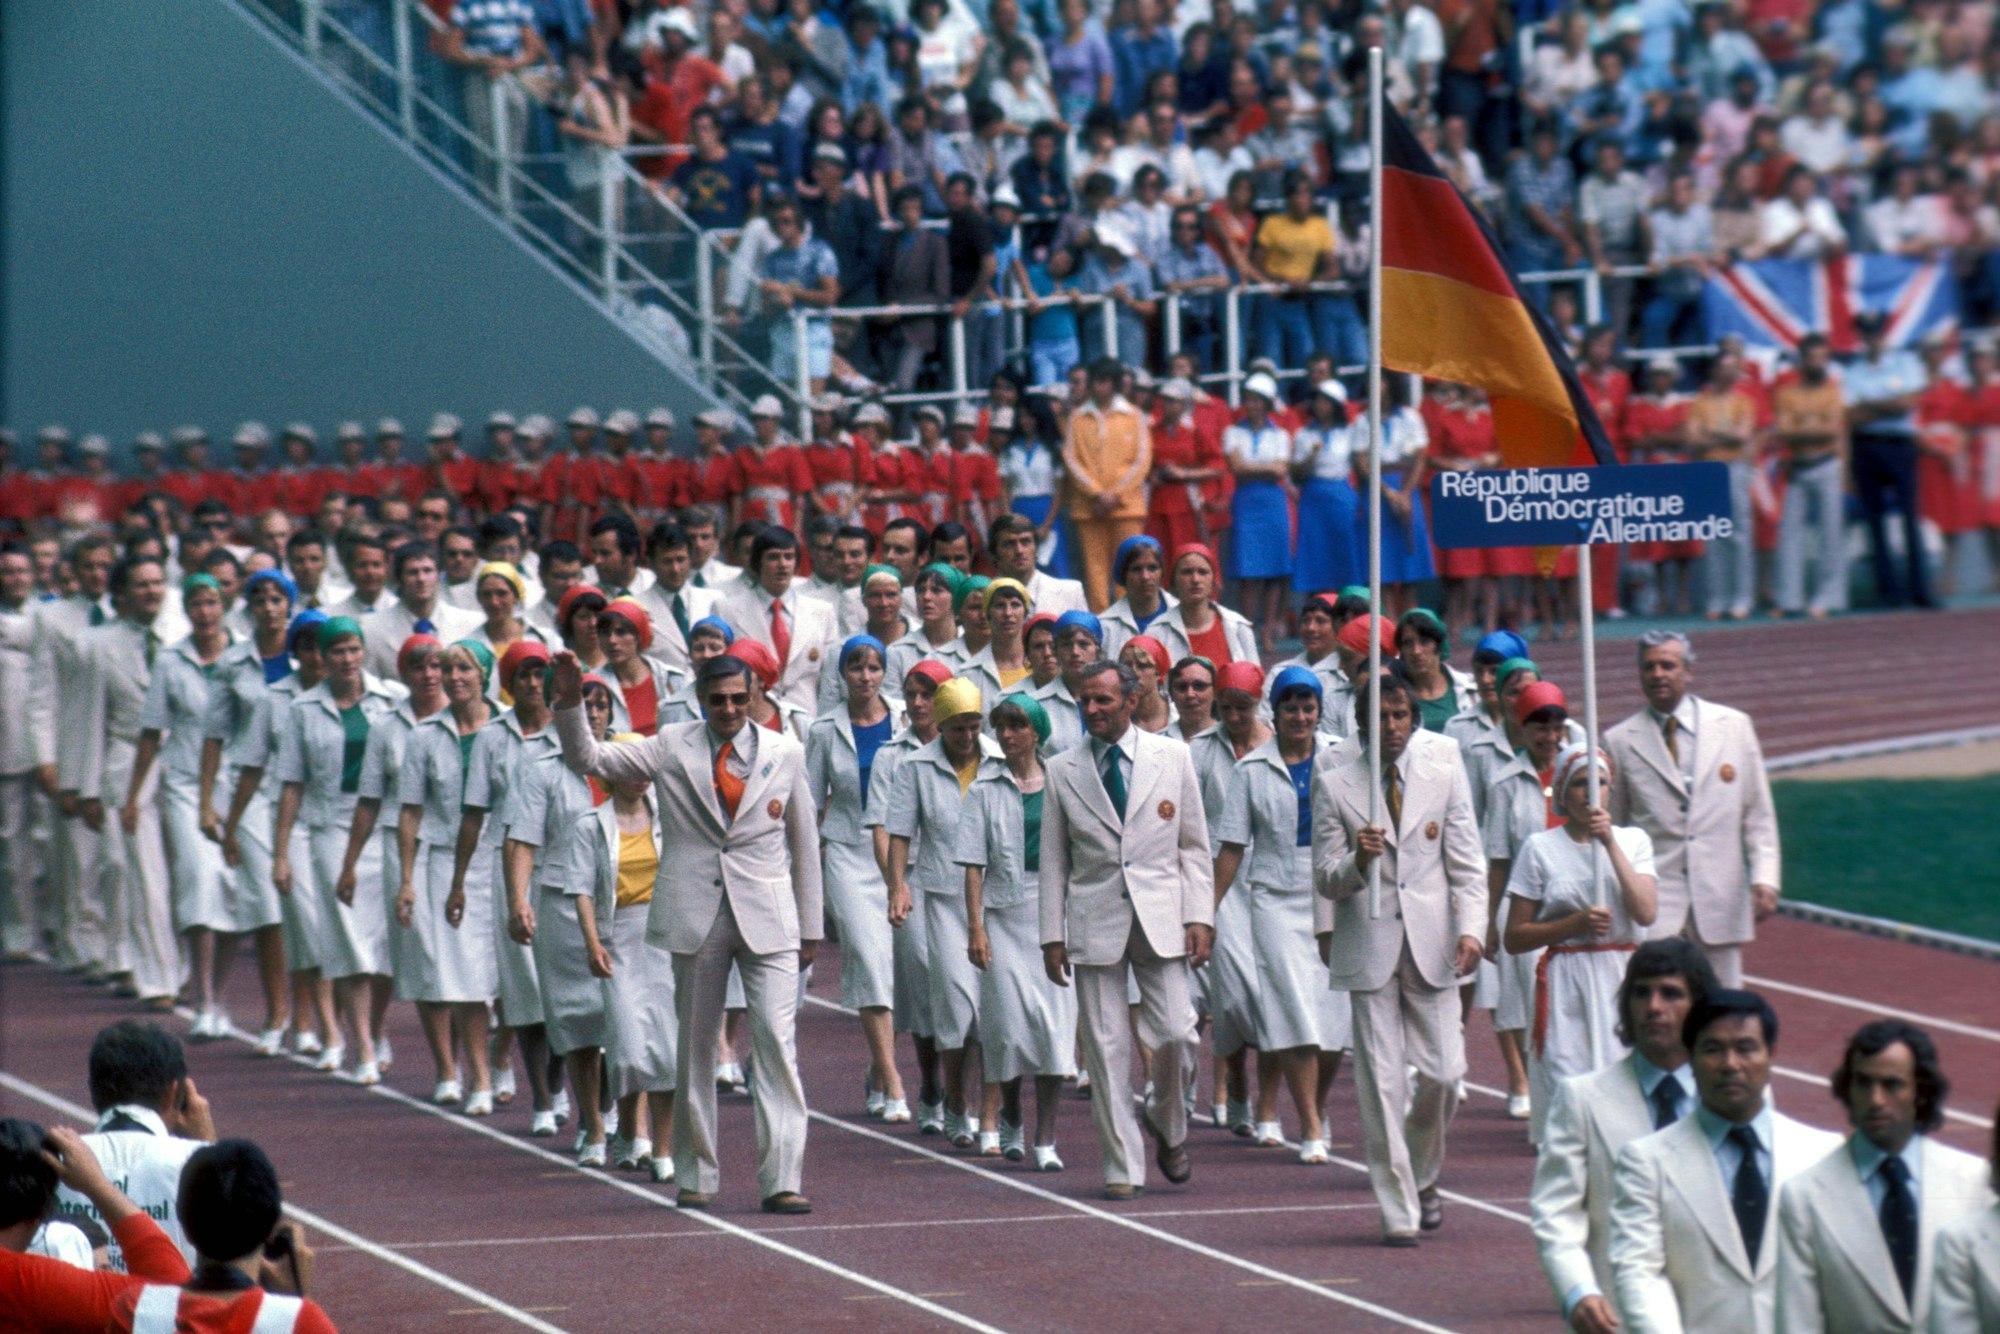 Einmarsch der DDR Delegation zur Eröffnungsfeier der Olympischen Sommerspiele 1976 in Montreal